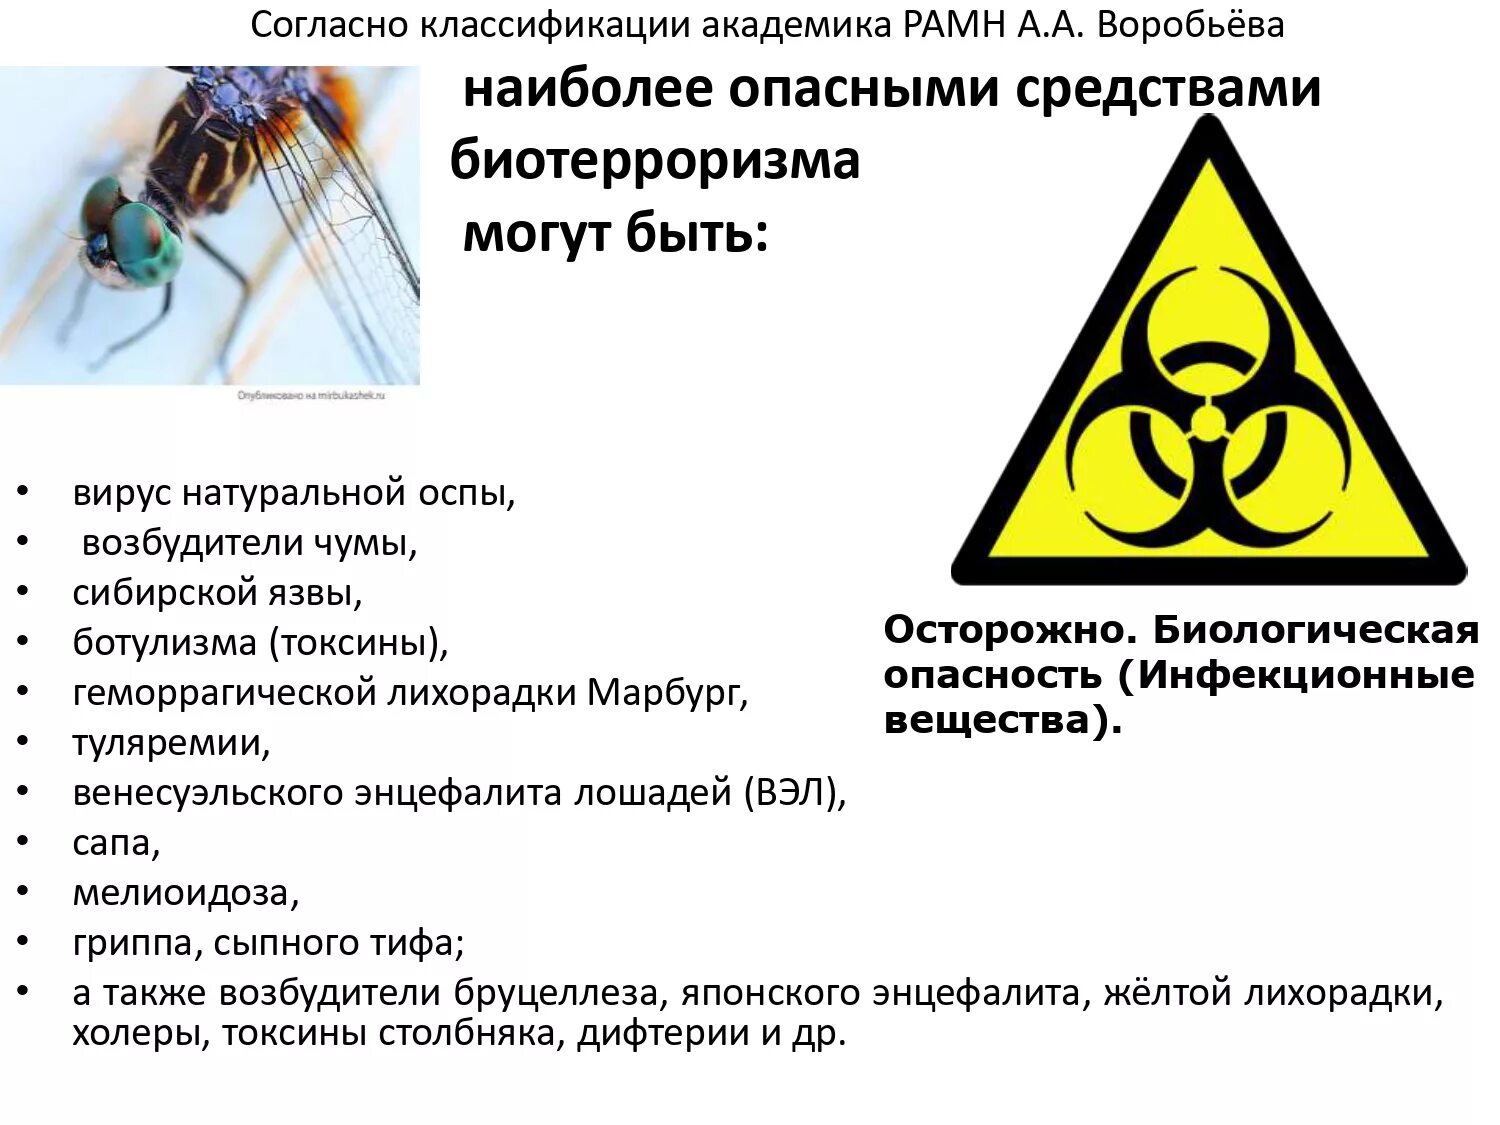 К потенциально опасным для человека веществам. Биологическая опасность. Биологически опасные объекты. Биологическое оружие и биотерроризм. Биологическая безопасность.